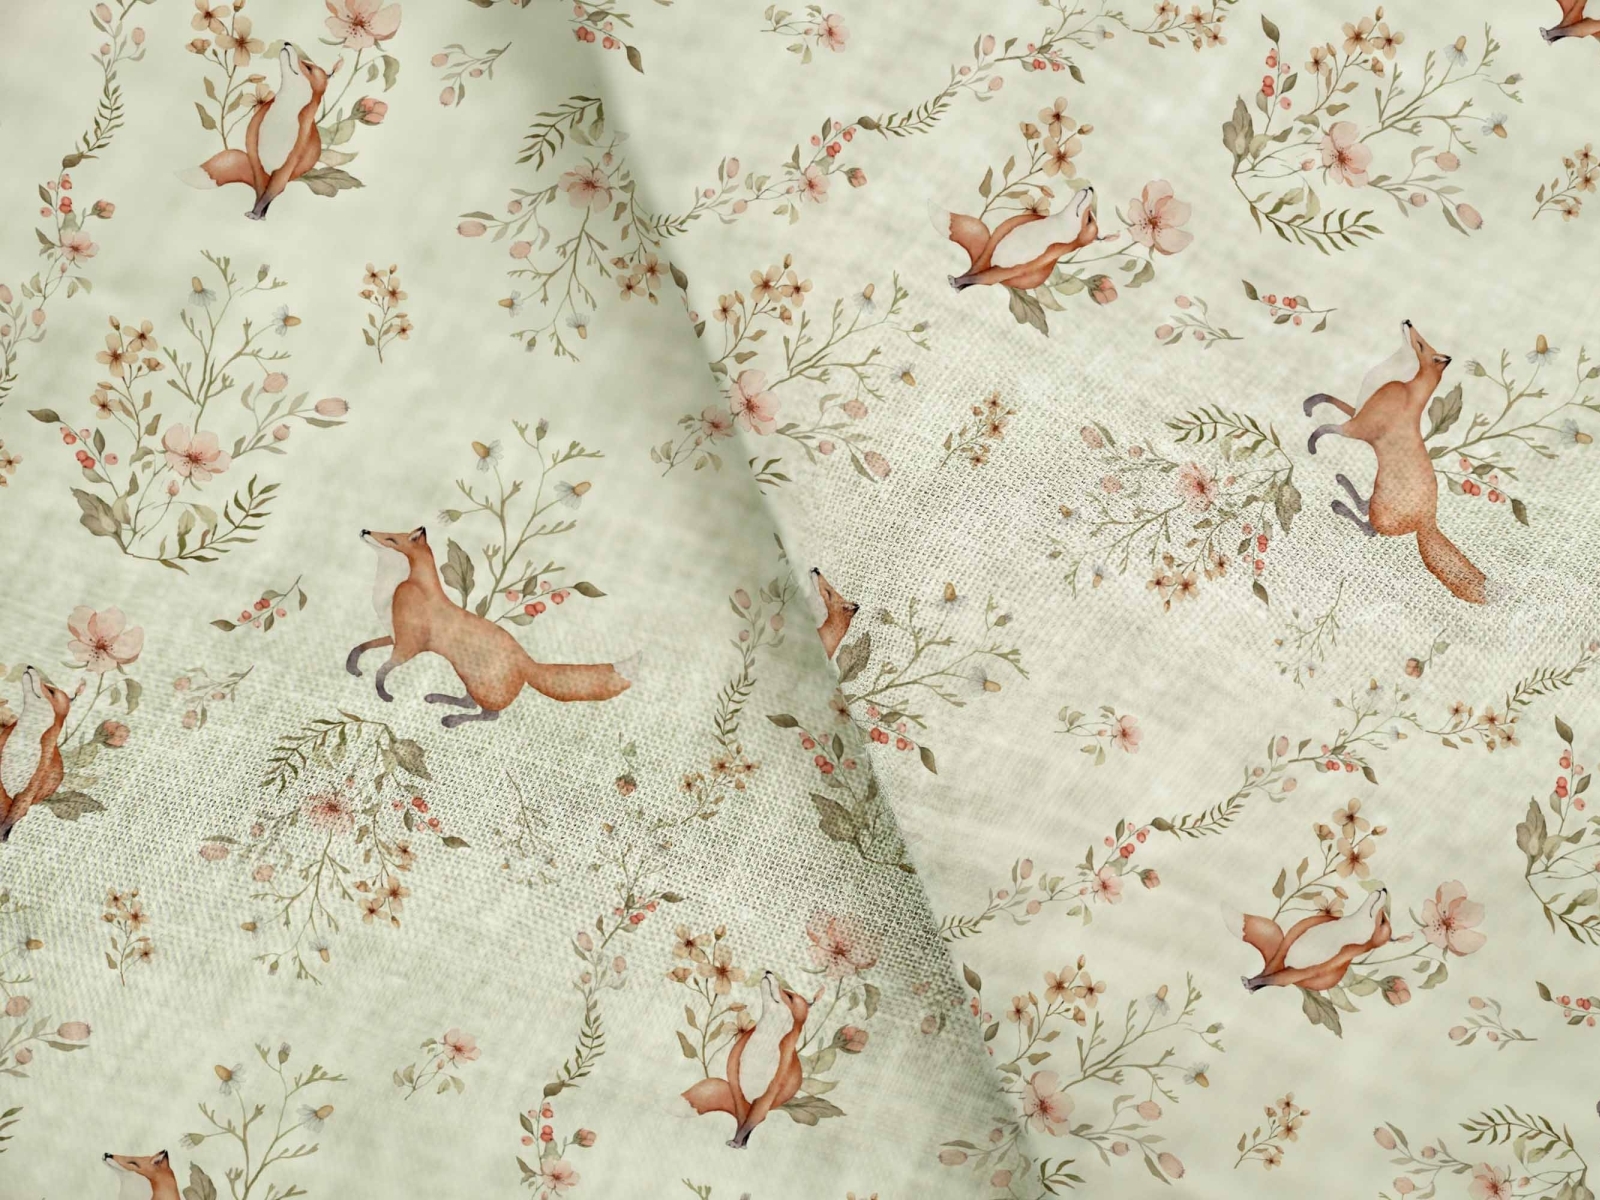 fox tale pattern by Mari Krosh on Dribbble